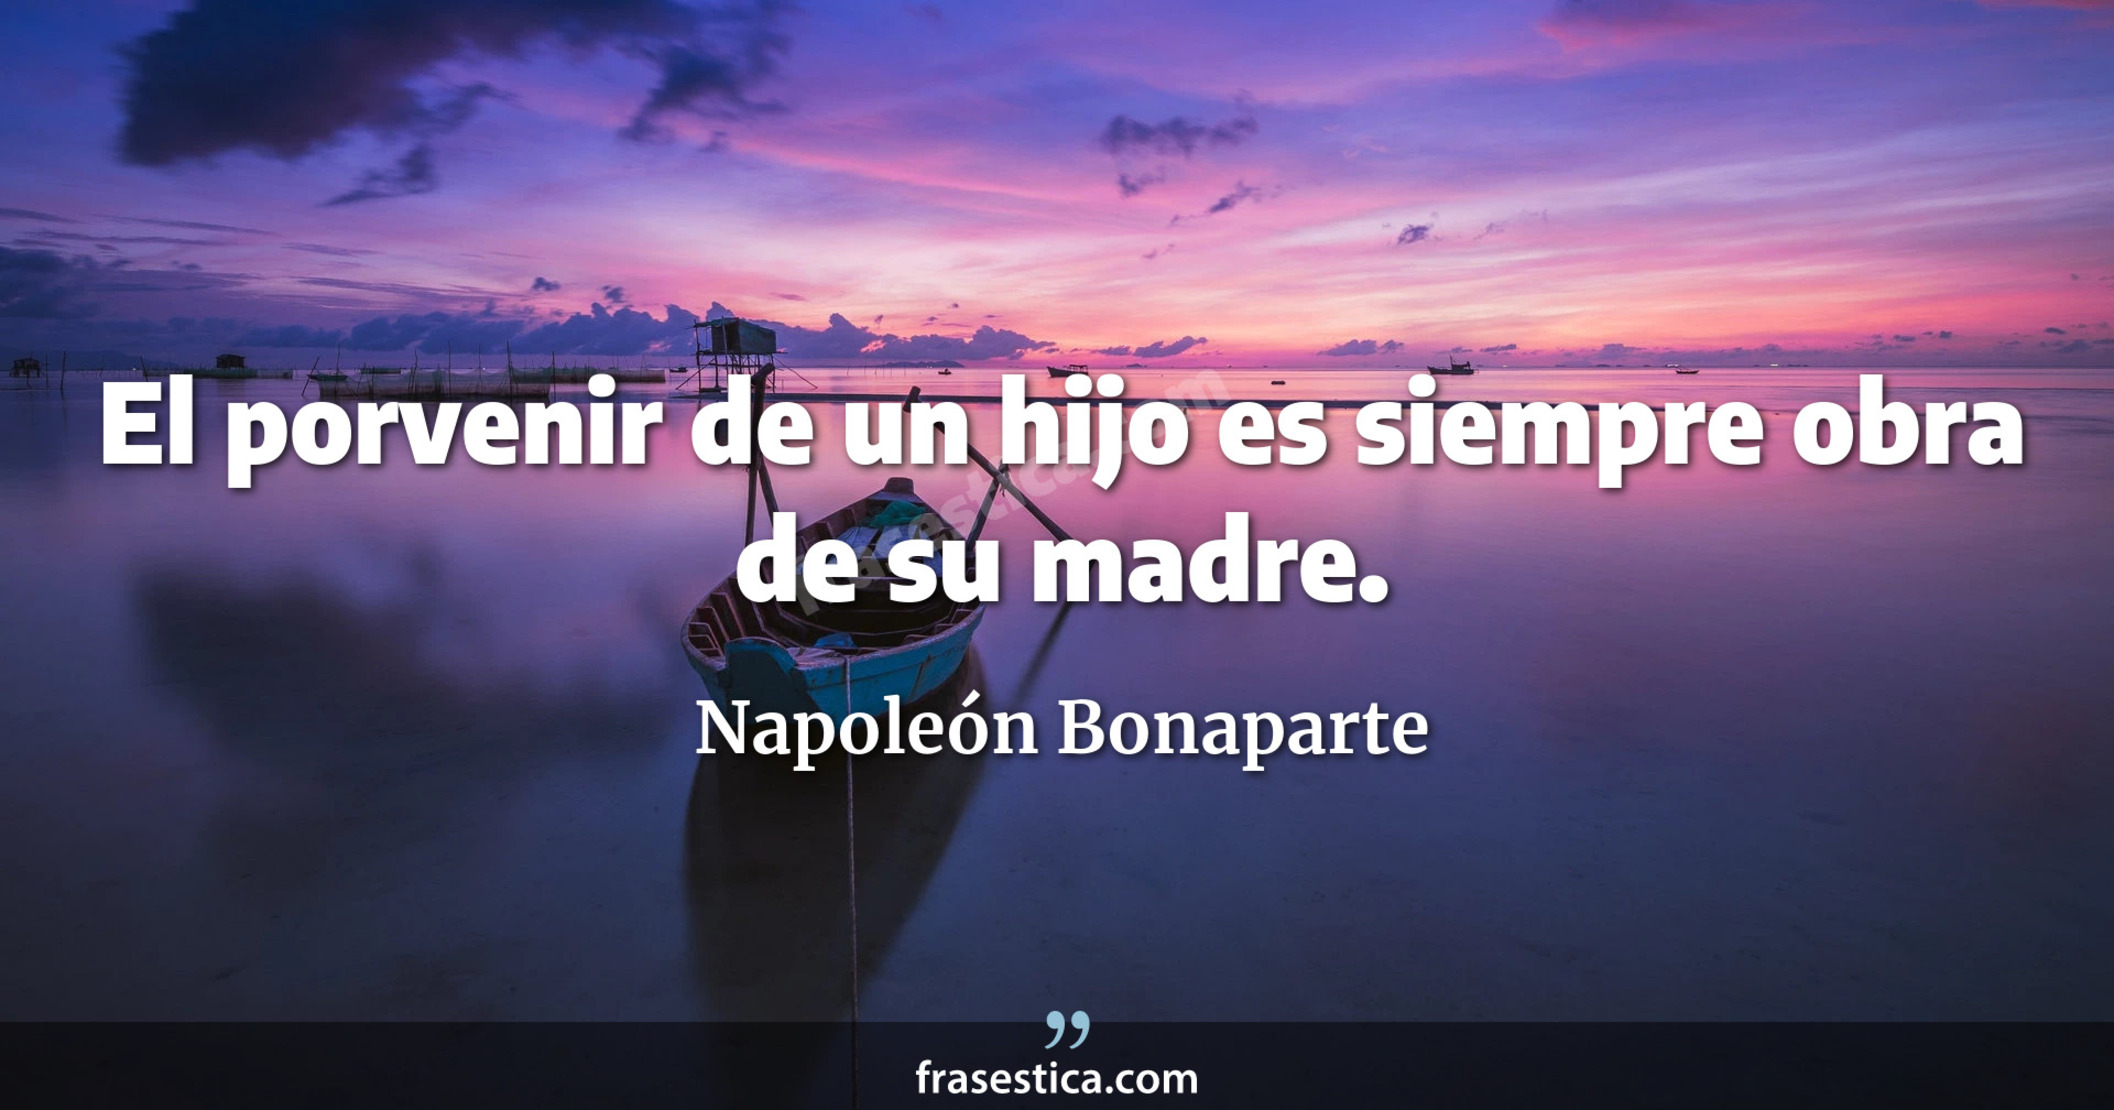 El porvenir de un hijo es siempre obra de su madre. - Napoleón Bonaparte